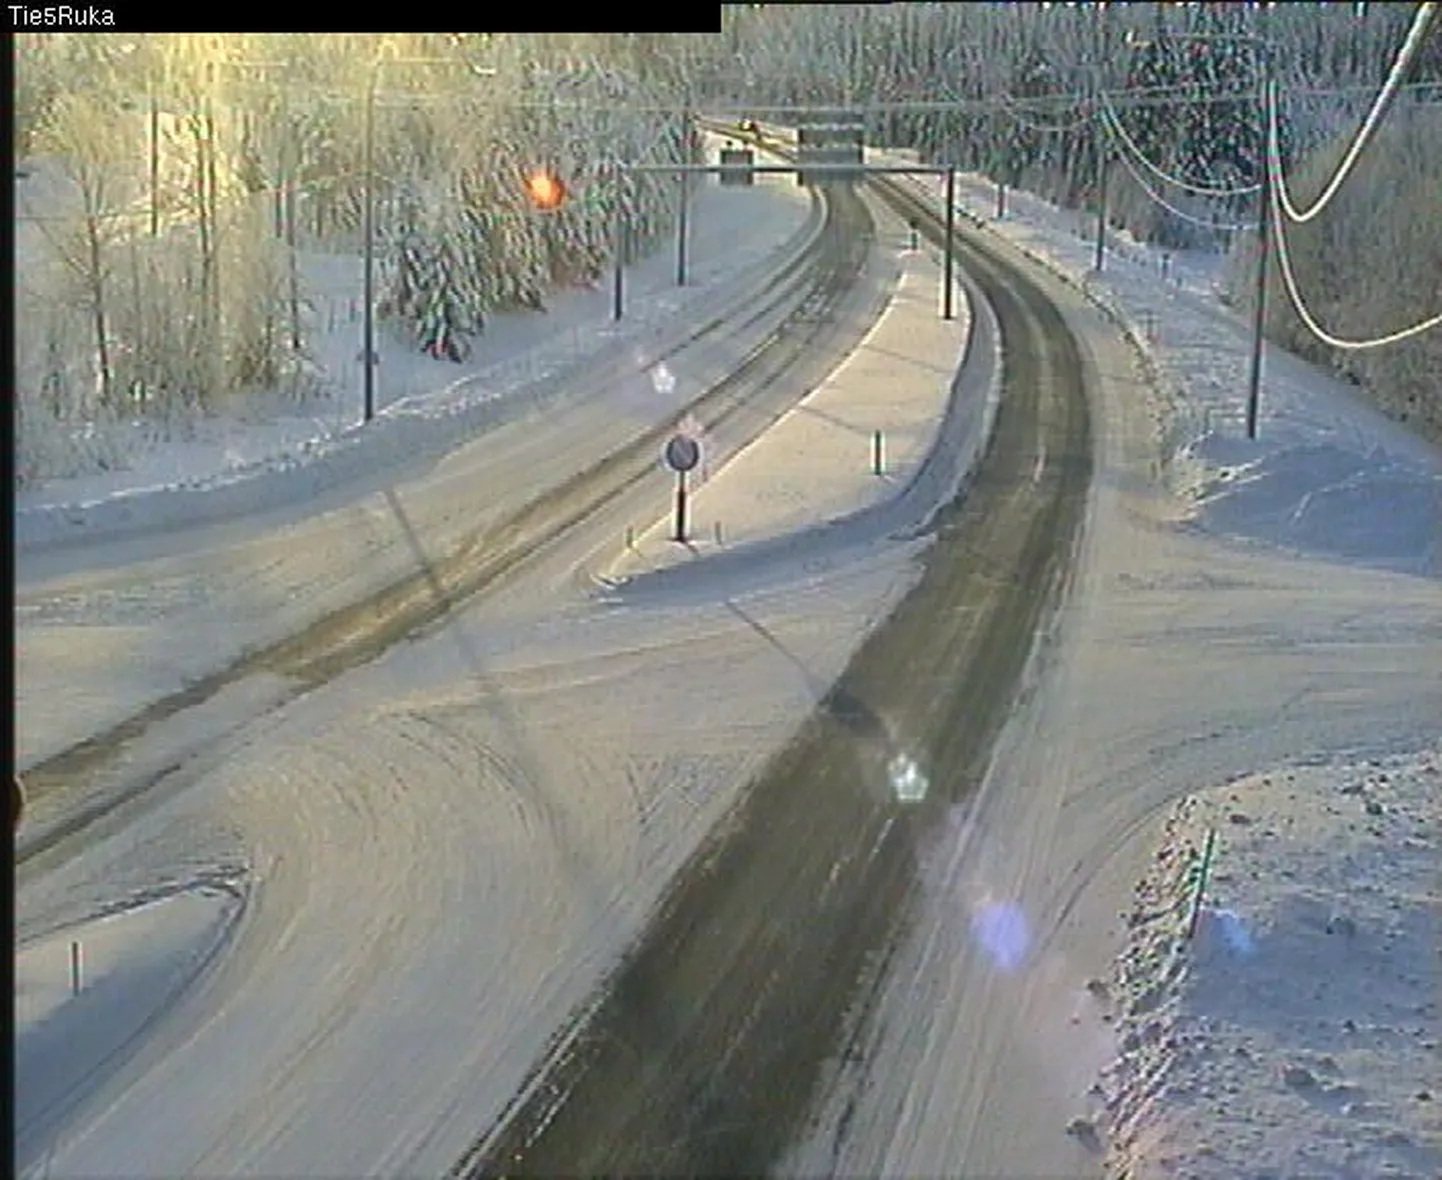 Maanteekaamerast saadud pilt Kuusamos, kus täna kell 11.53 oli külma 31 kraadi.